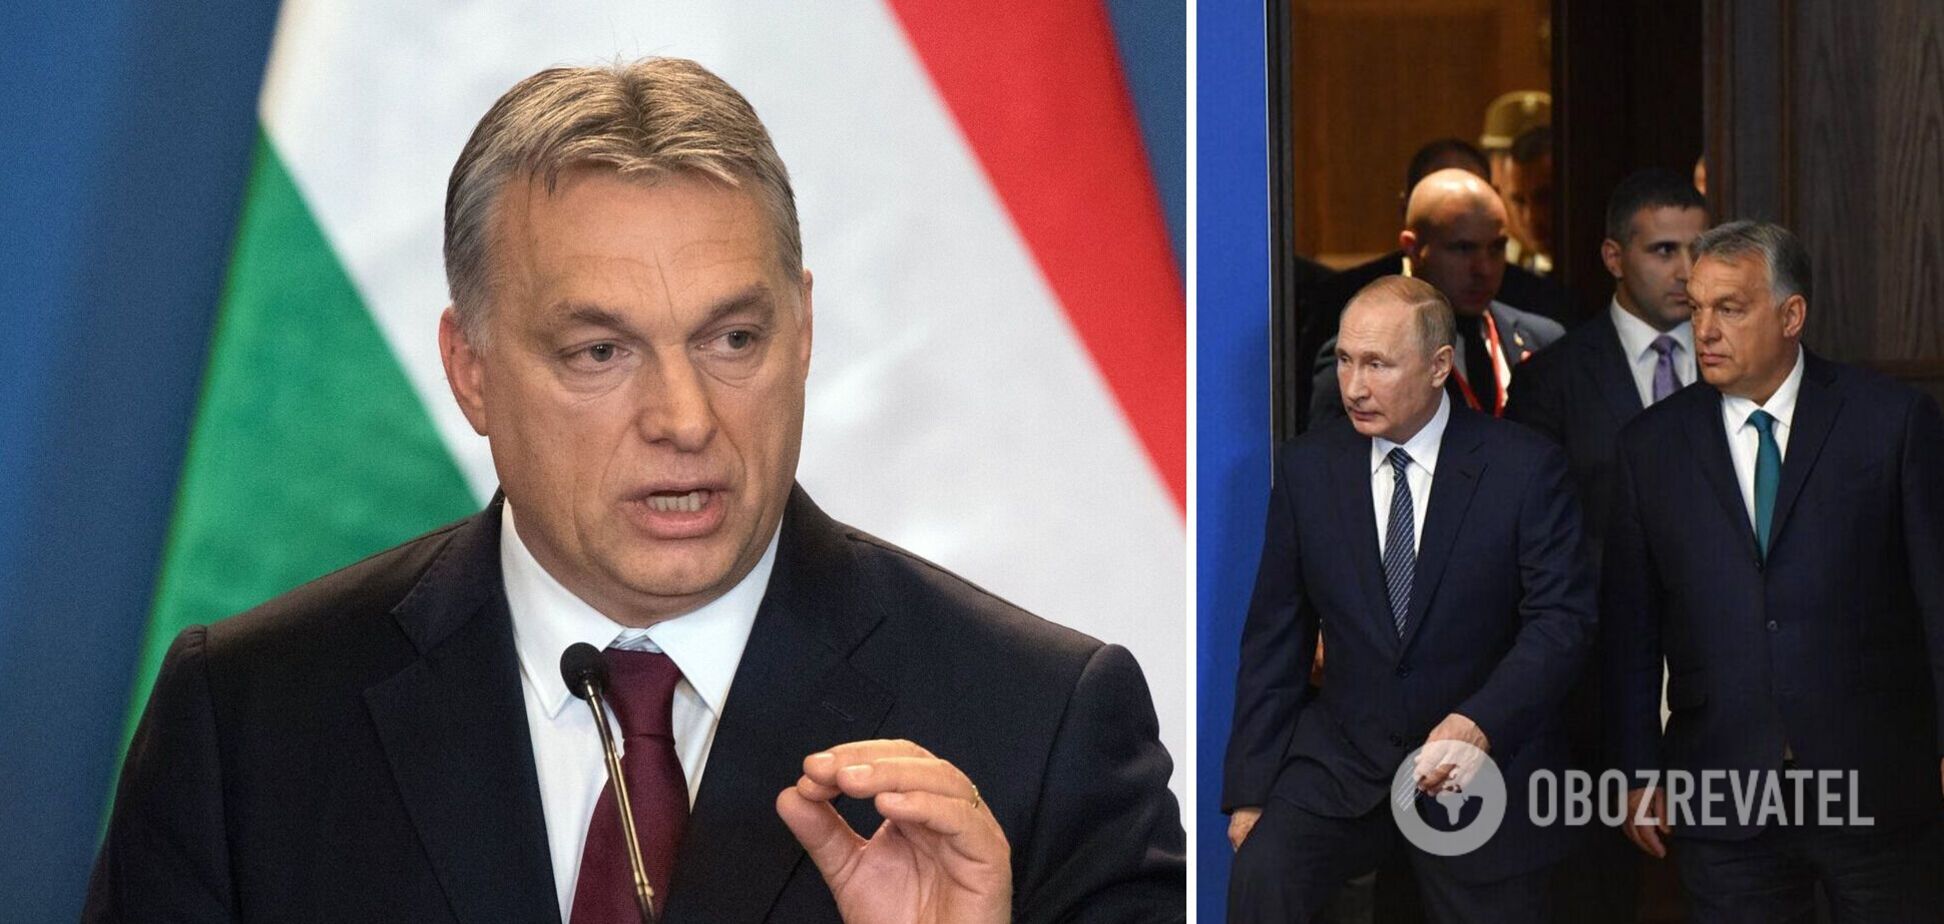 Друг Путіна Орбан вчетверте стане прем'єром Угорщини, він назвав Зеленського своїм опонентом